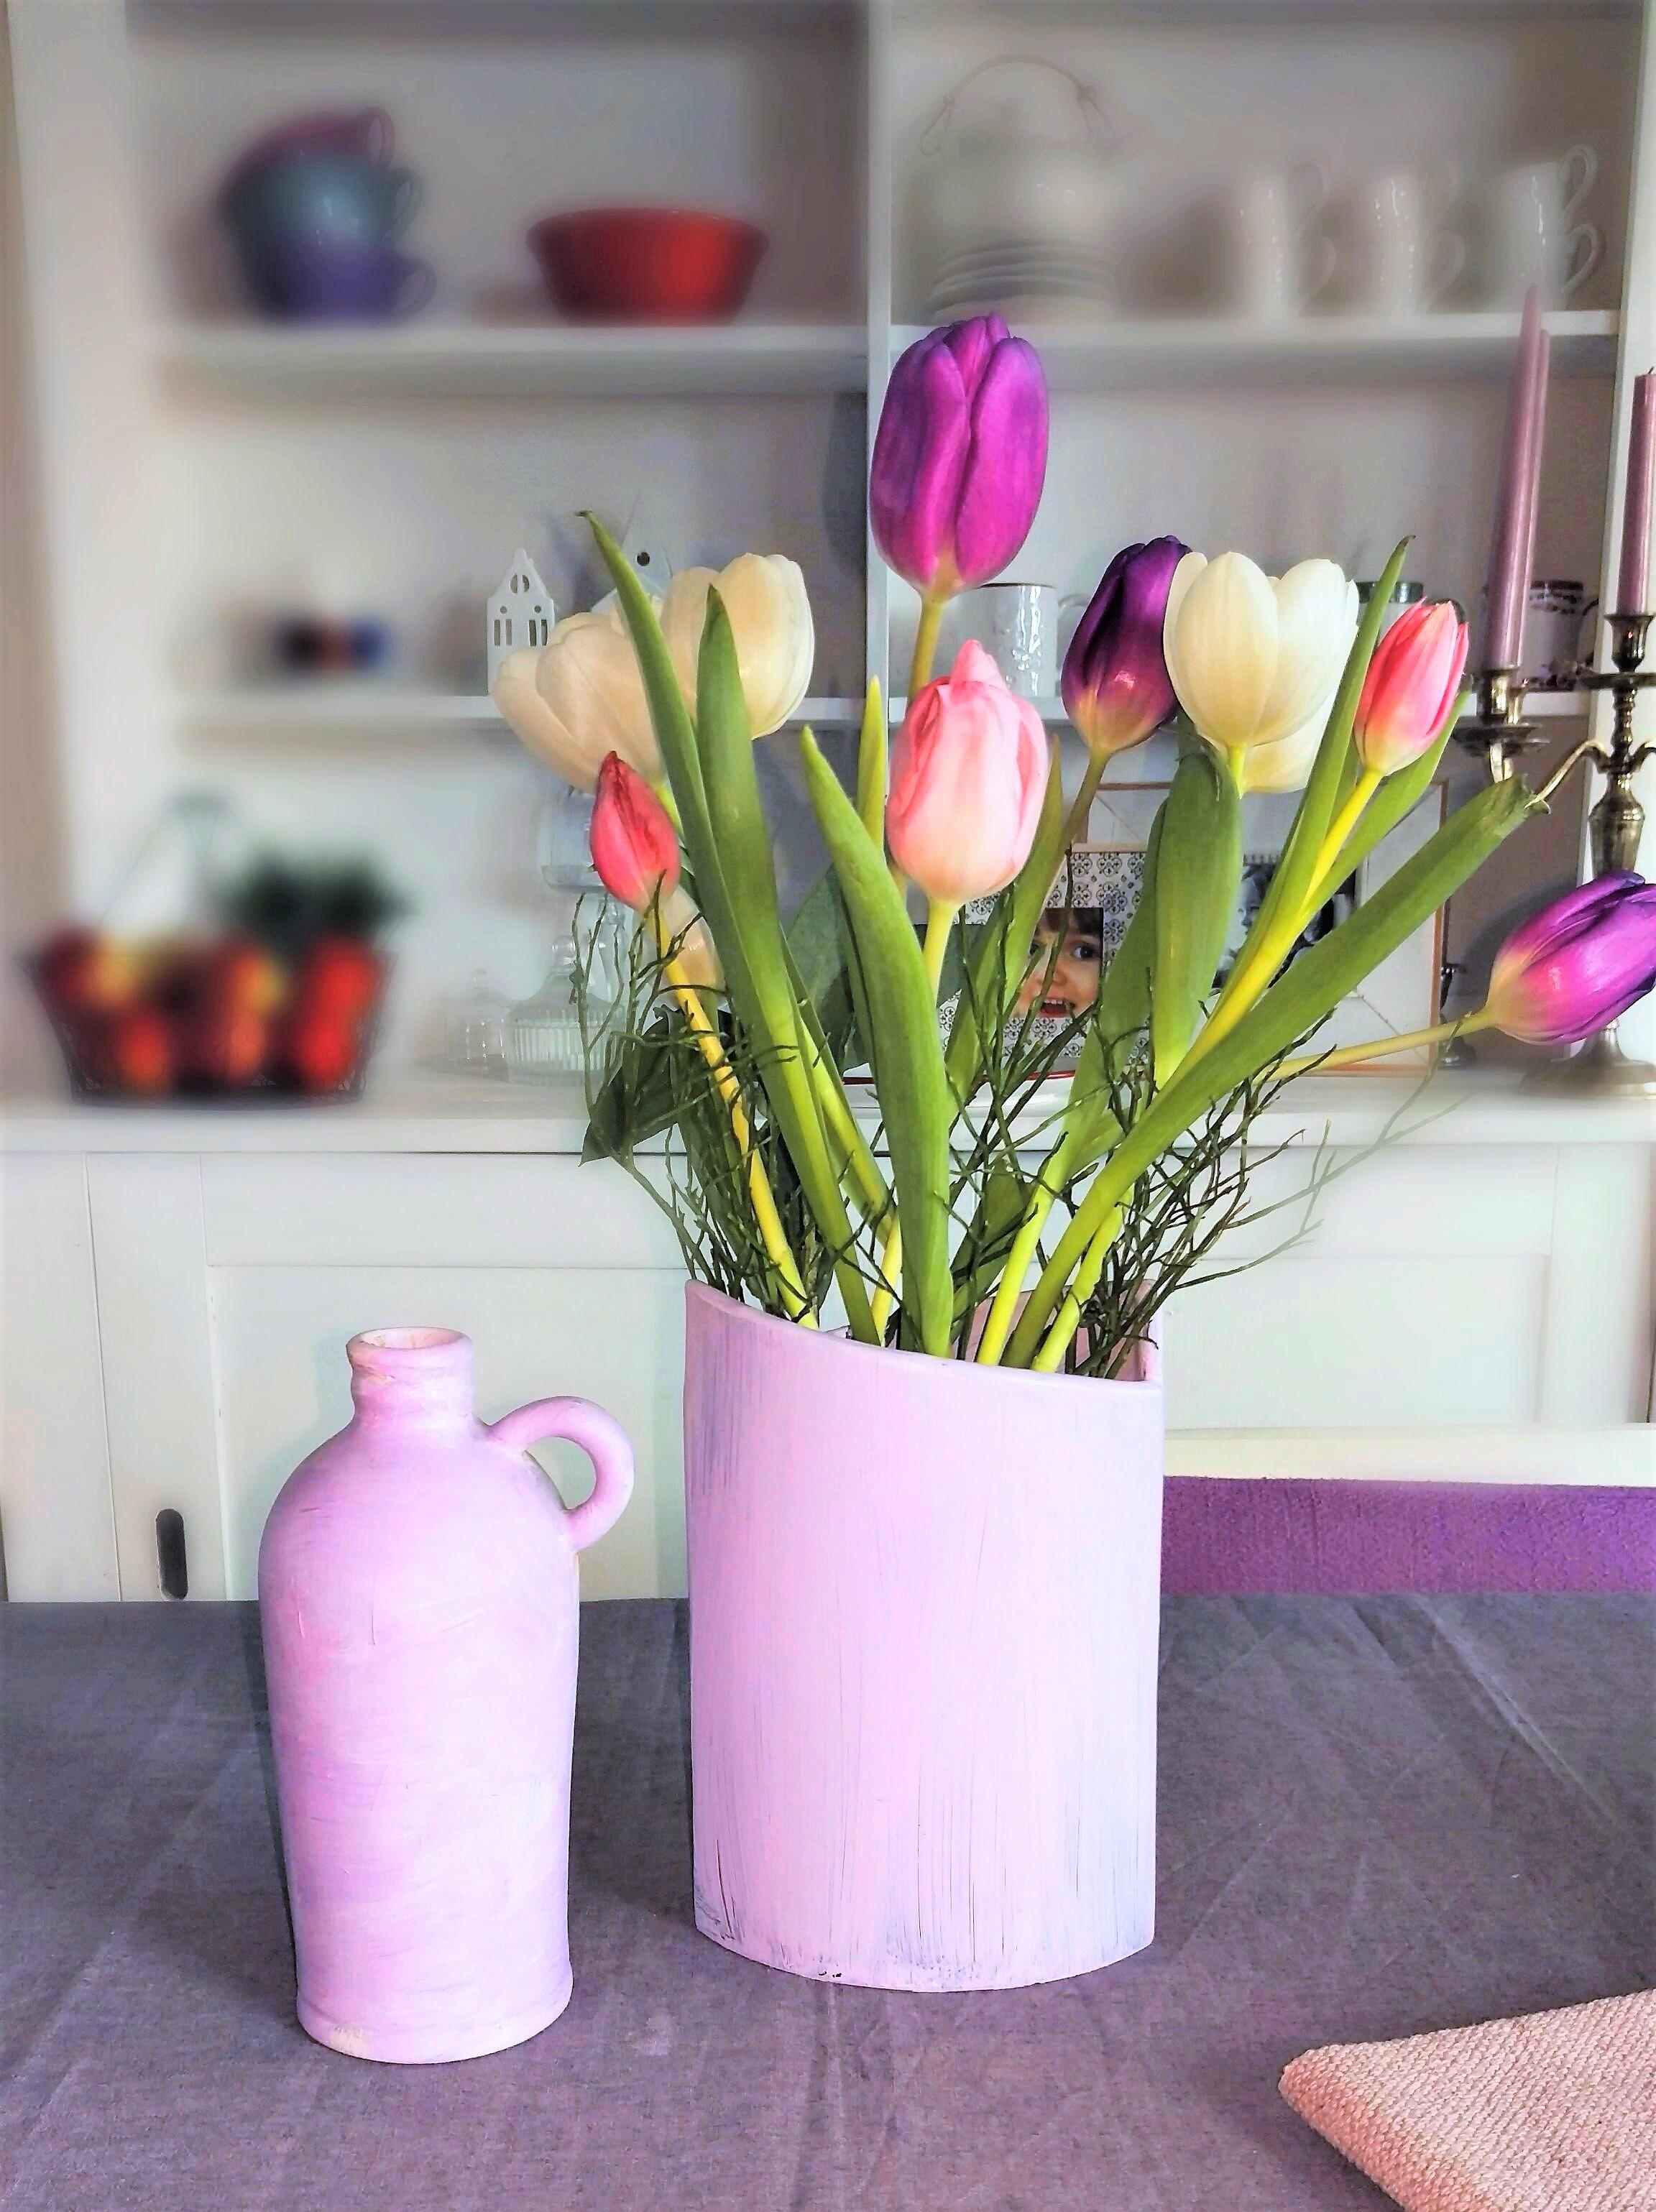 aus alter likörflasche schnell mal eine vase gemacht #diy #freshflower #vase #deko